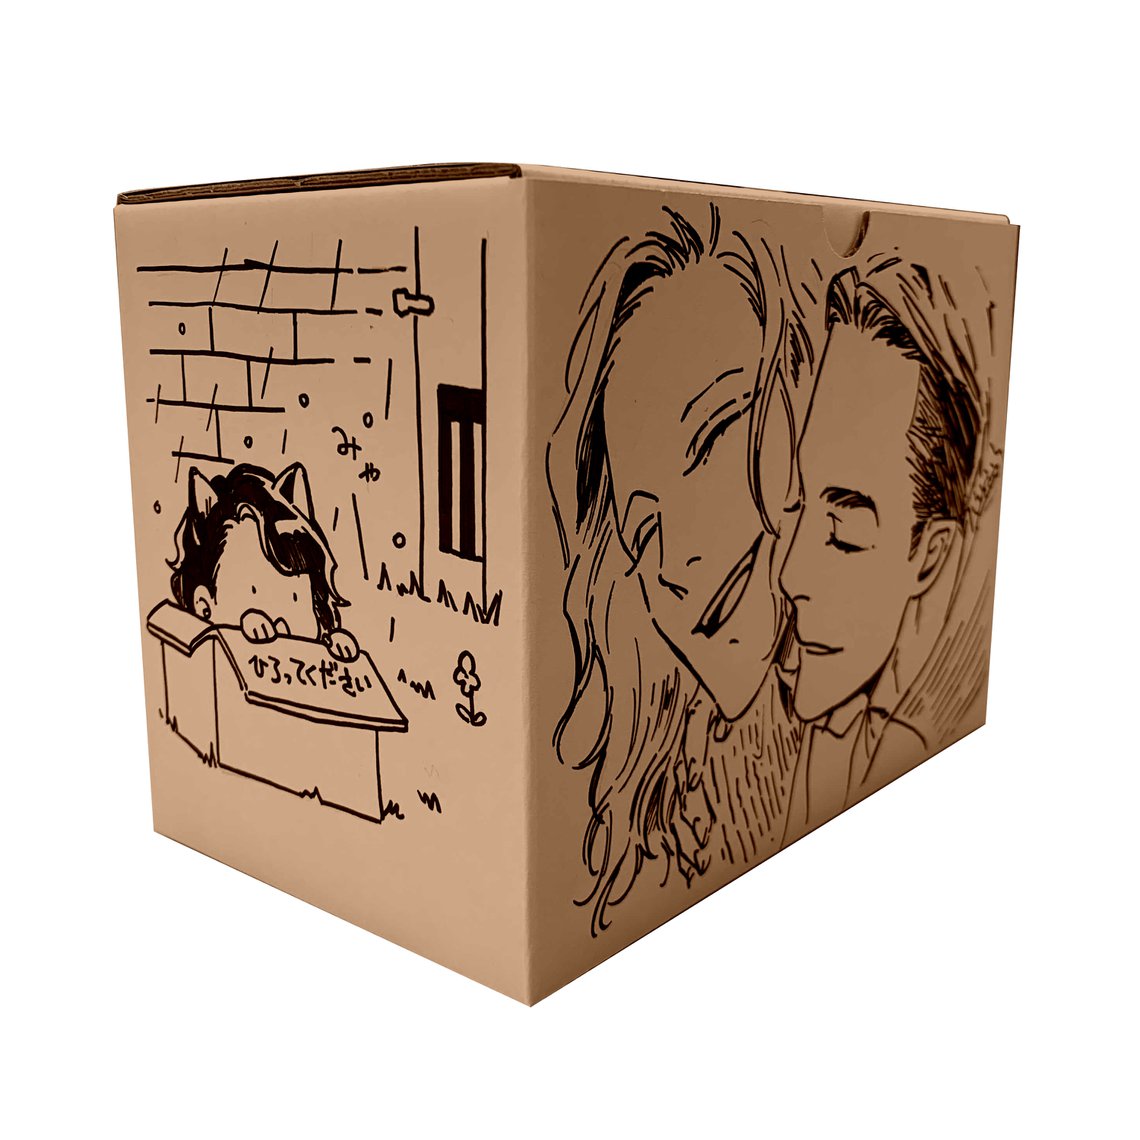 「ジェラシー」描き下ろし収納BOX単体〈『ジェラシー』完結記念〉